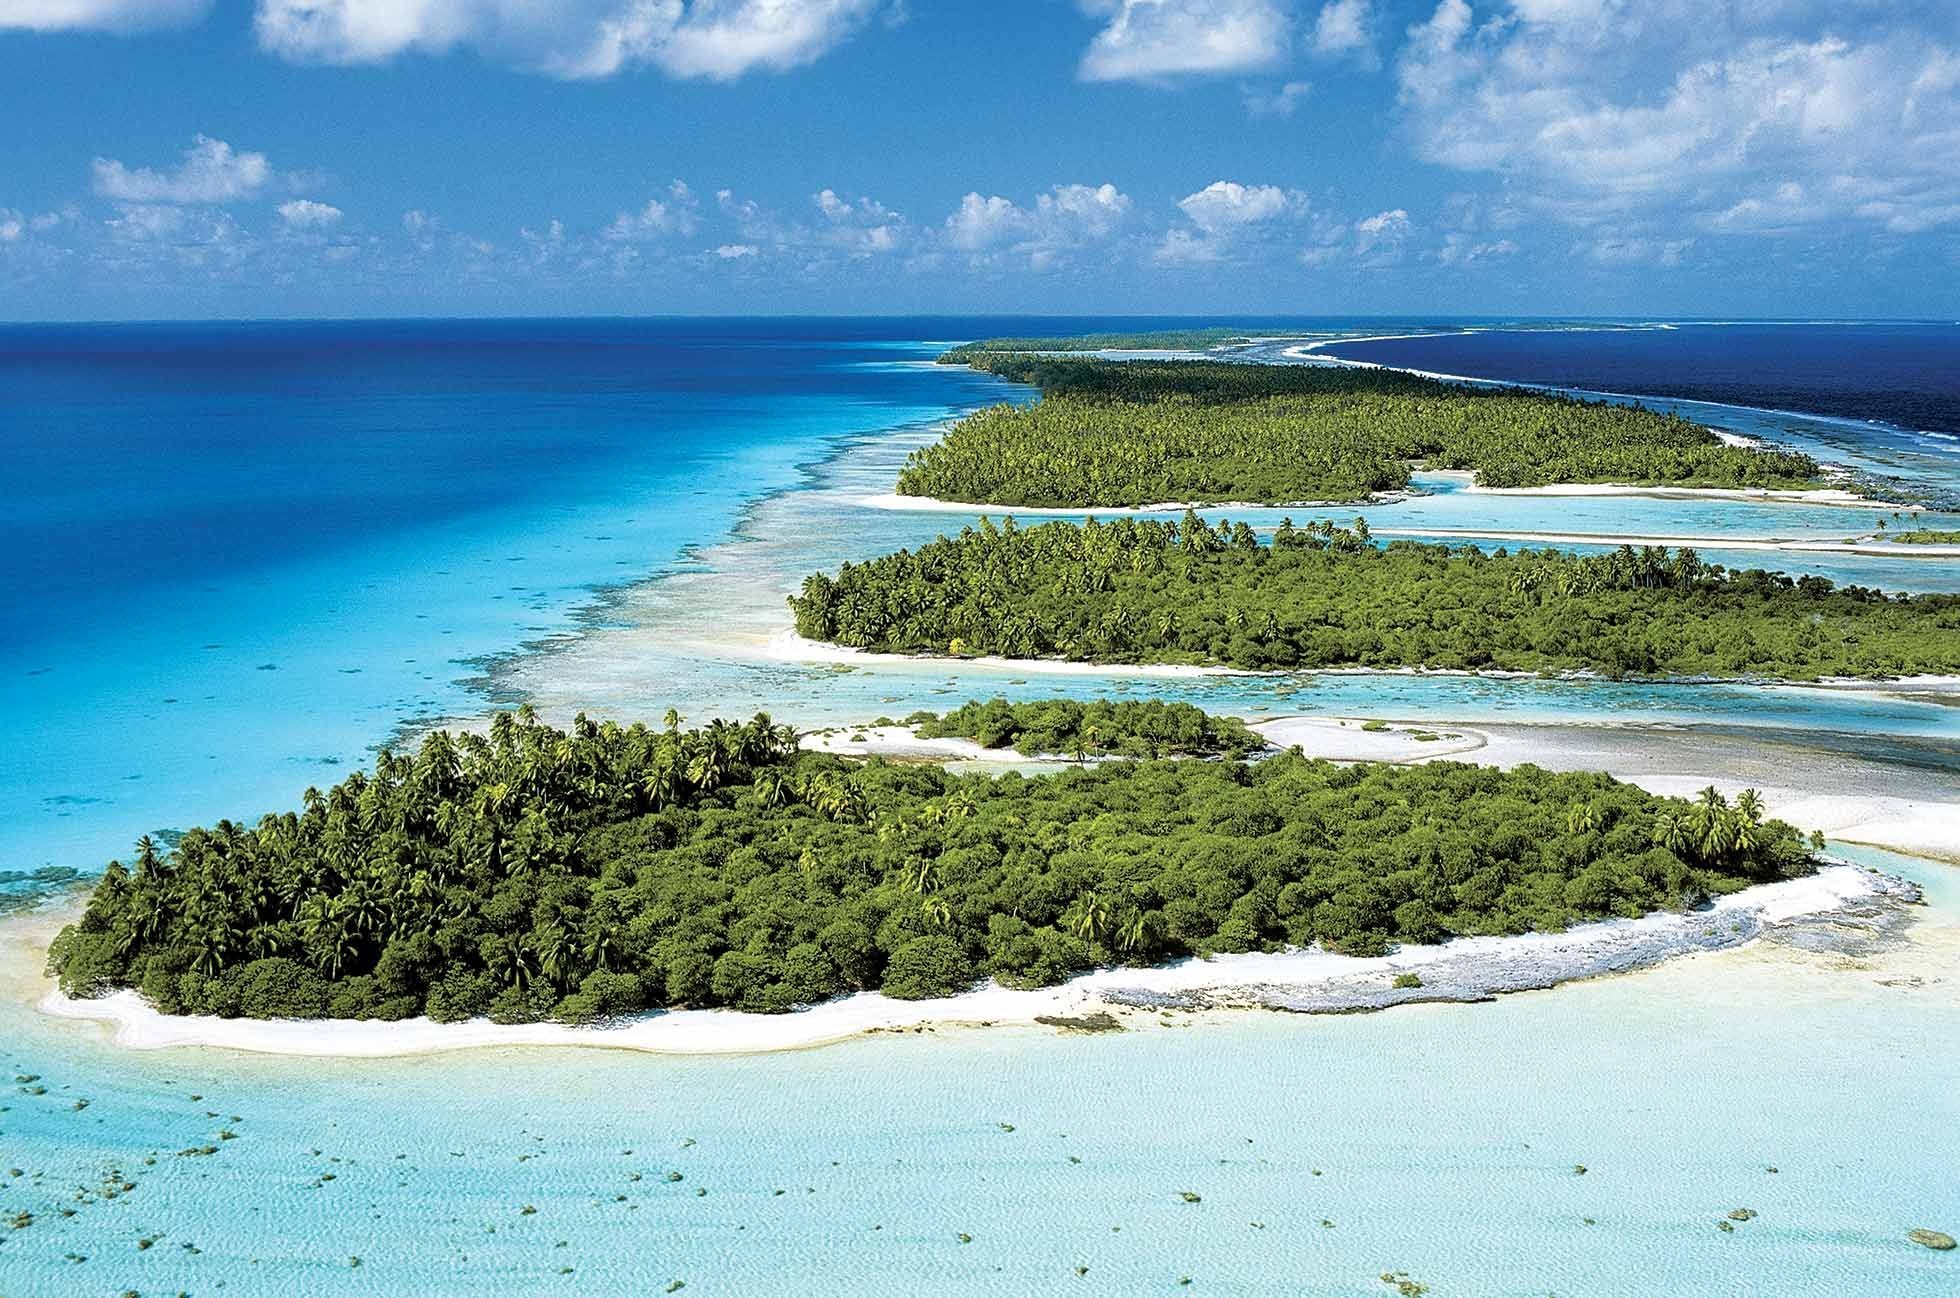 Архипелаг Туамоту, французская Полинезия. Атолл Рангироа. Рангироа остров. Группа островов в архипелаге Туамоту.